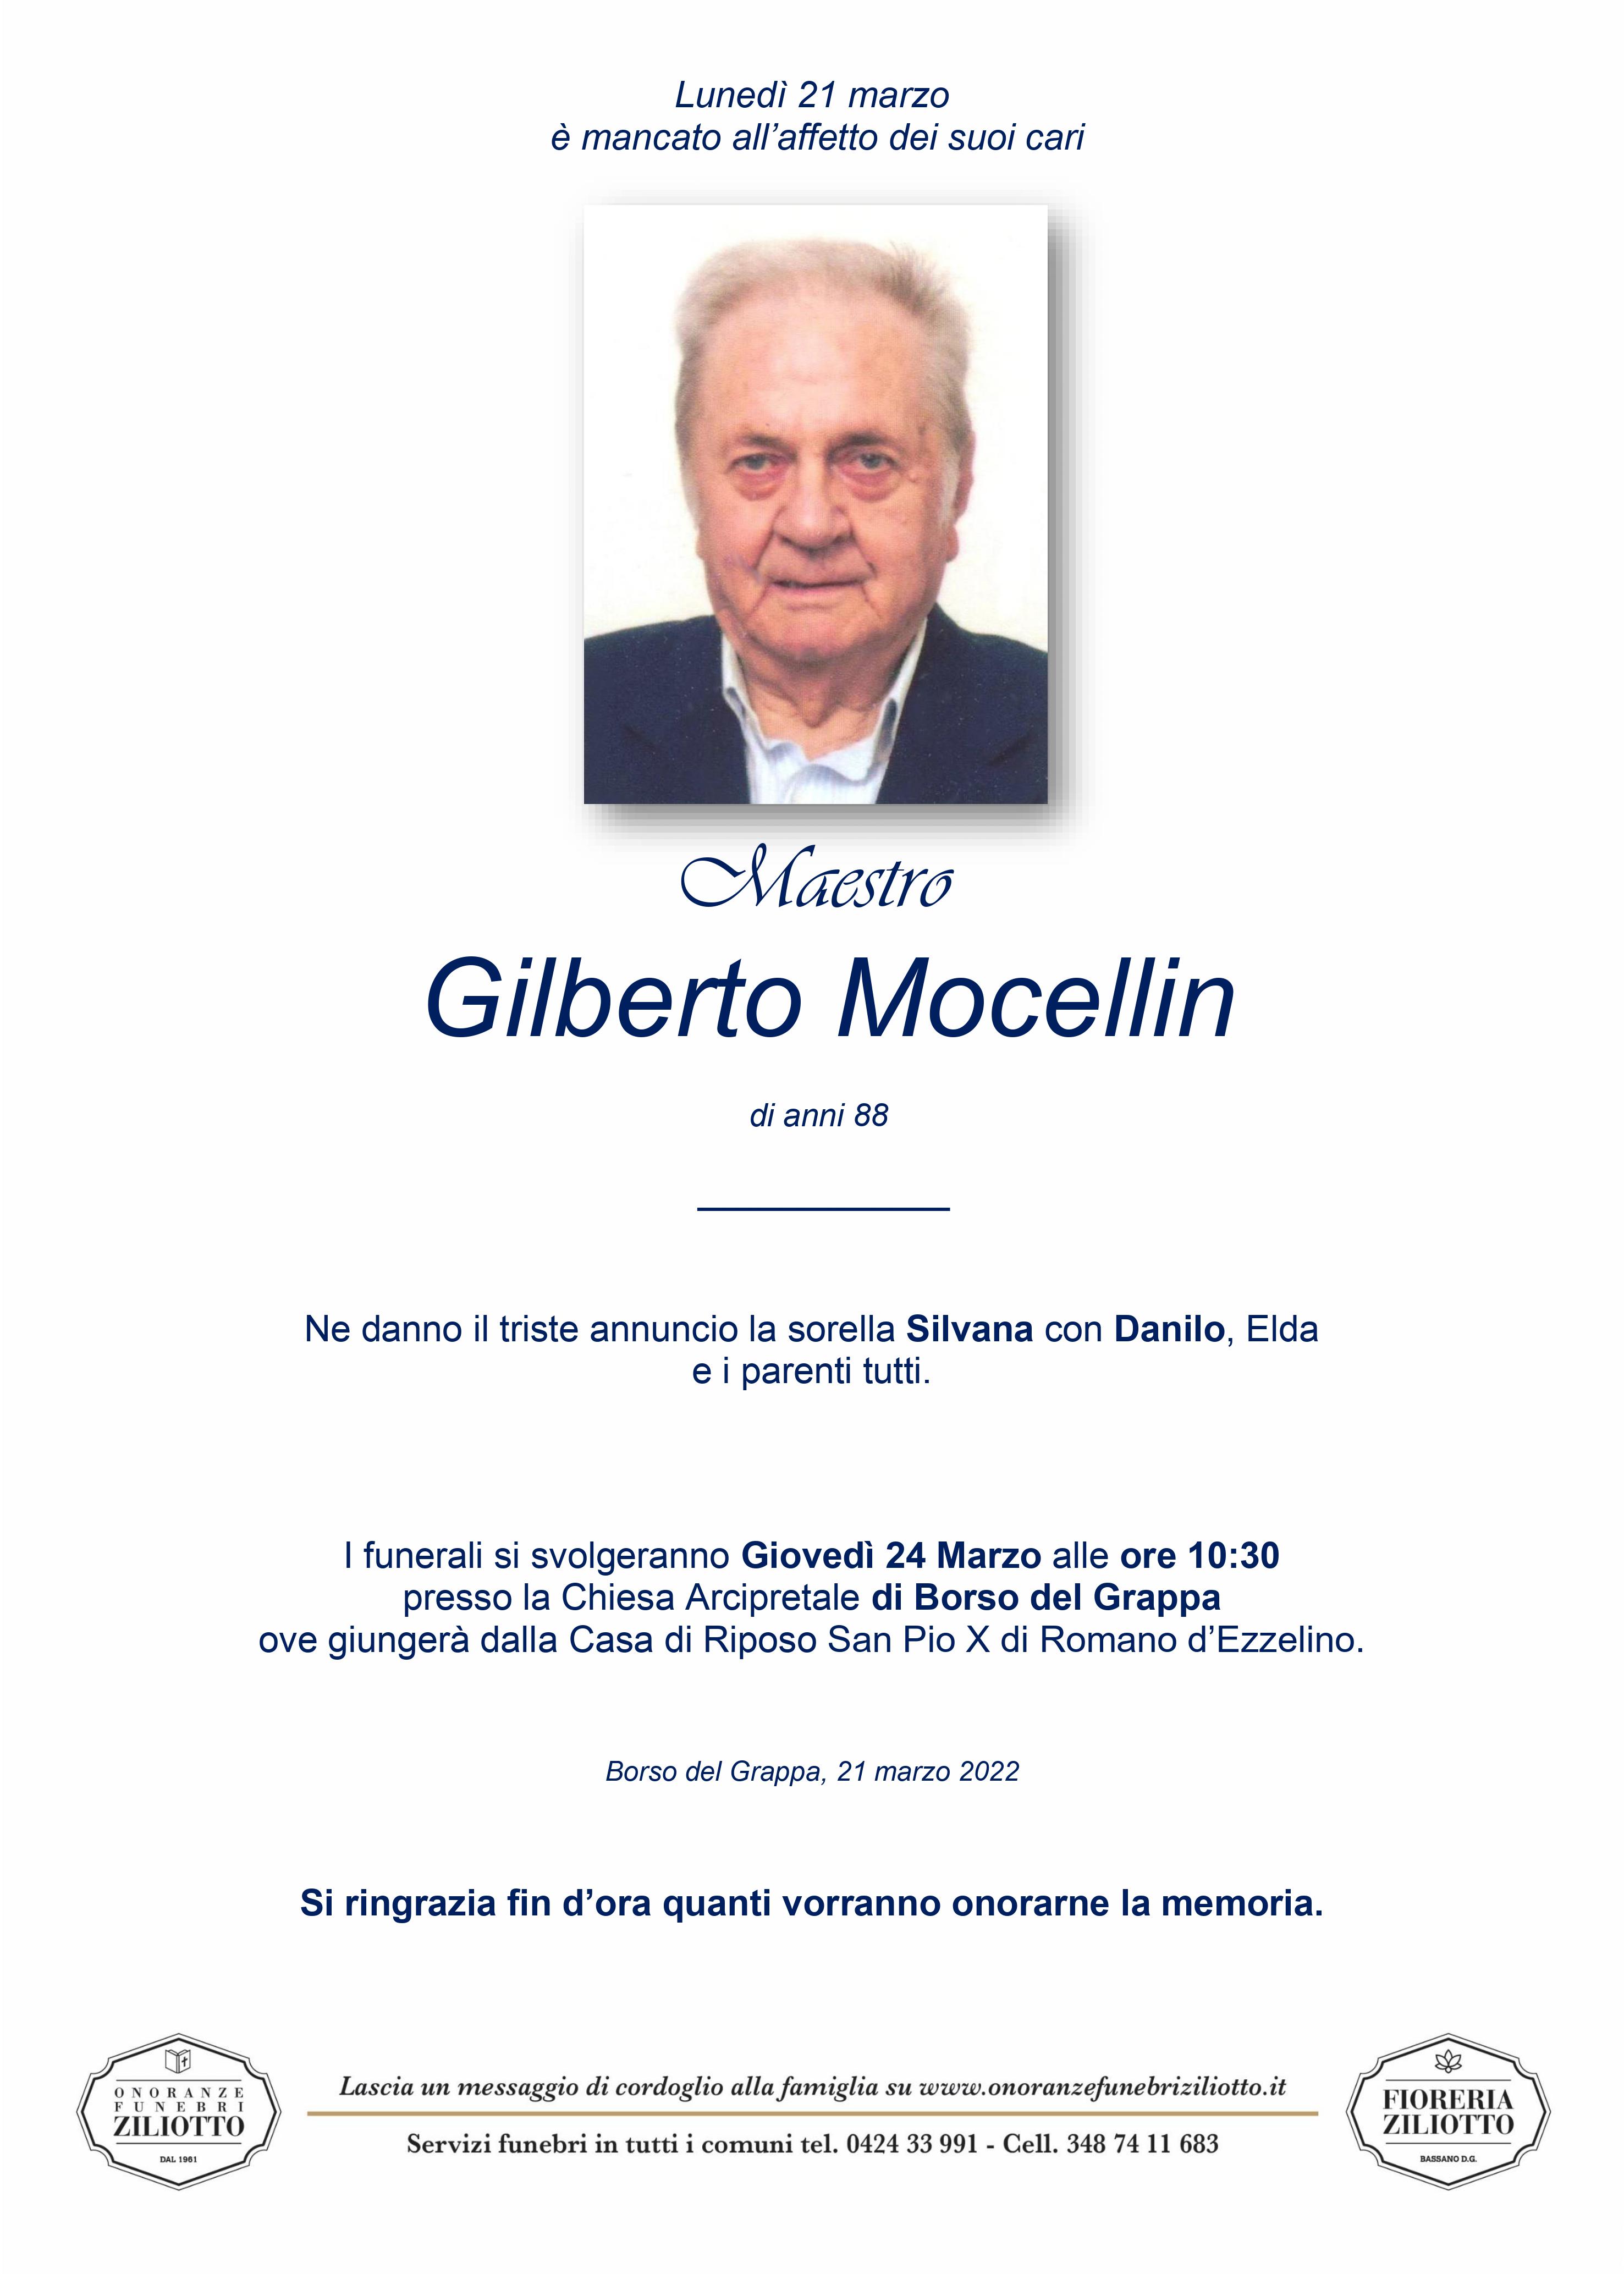 Gilberto Mocellin - 88 anni - Bassano del Grappa